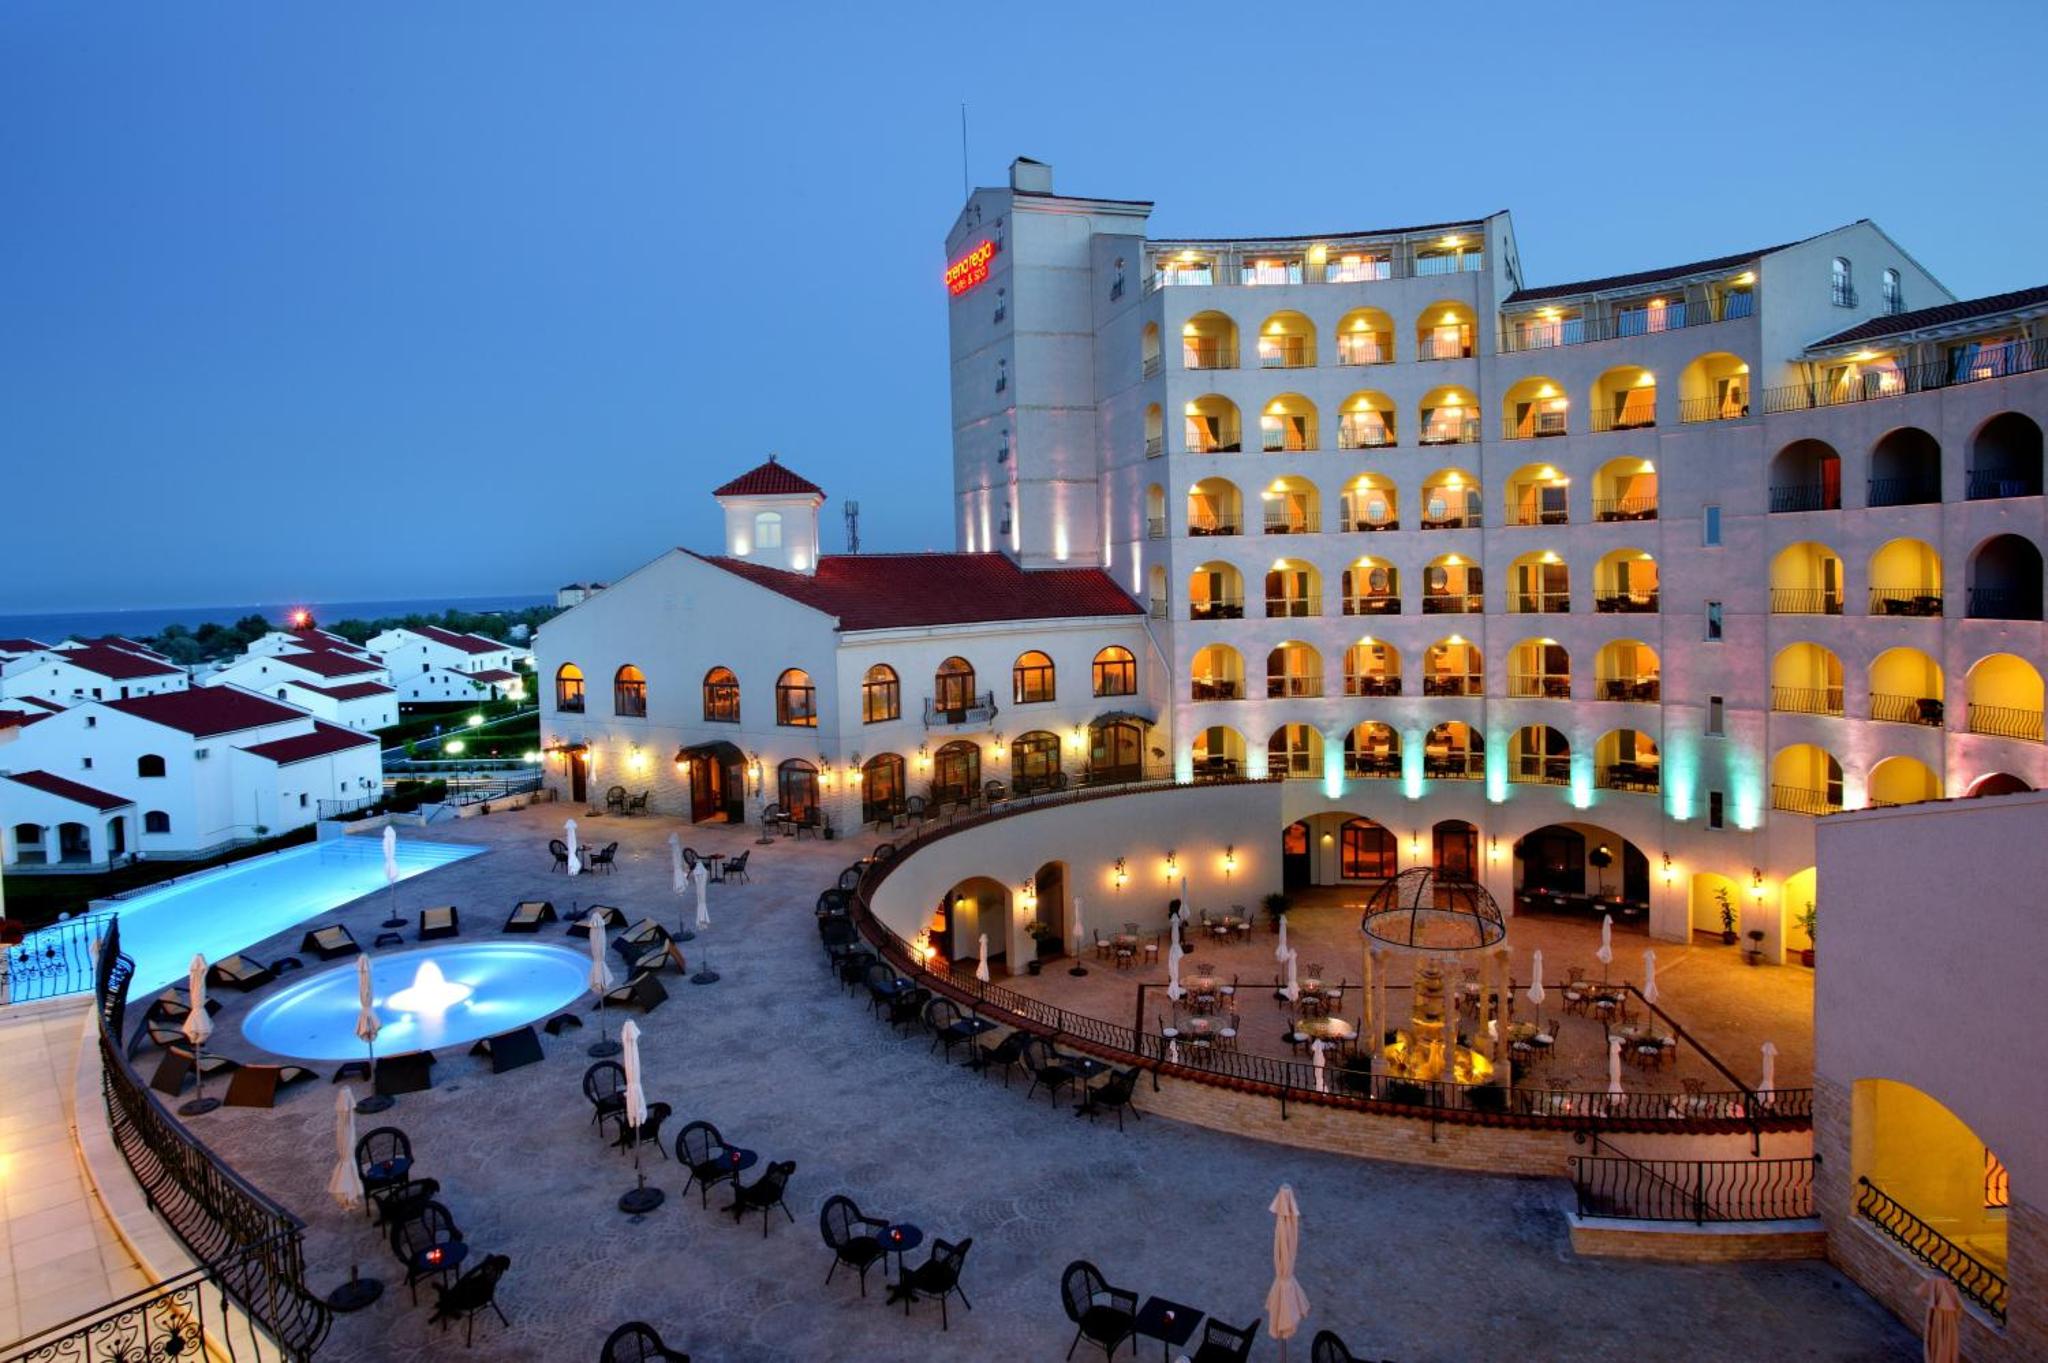 Arena Regia Hotel & Spa